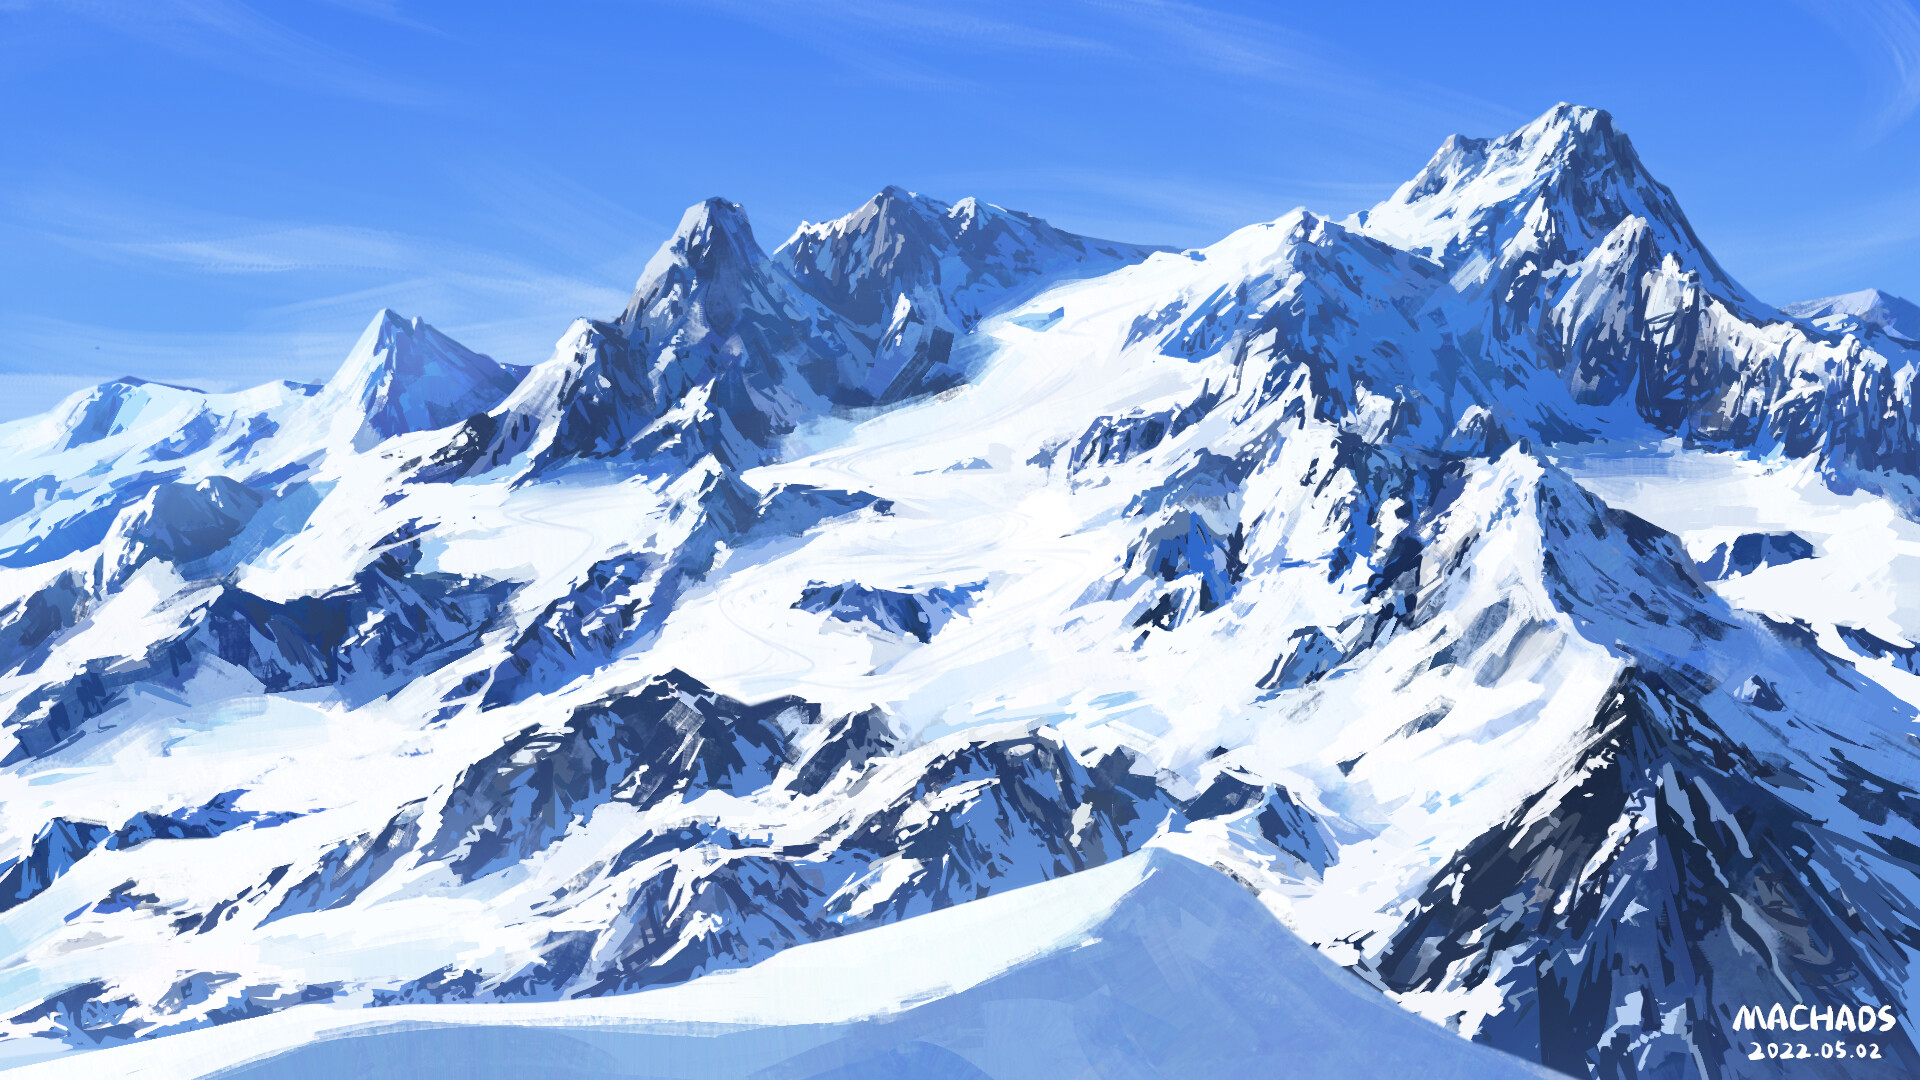 ArtStation - Snow Mountain exersice